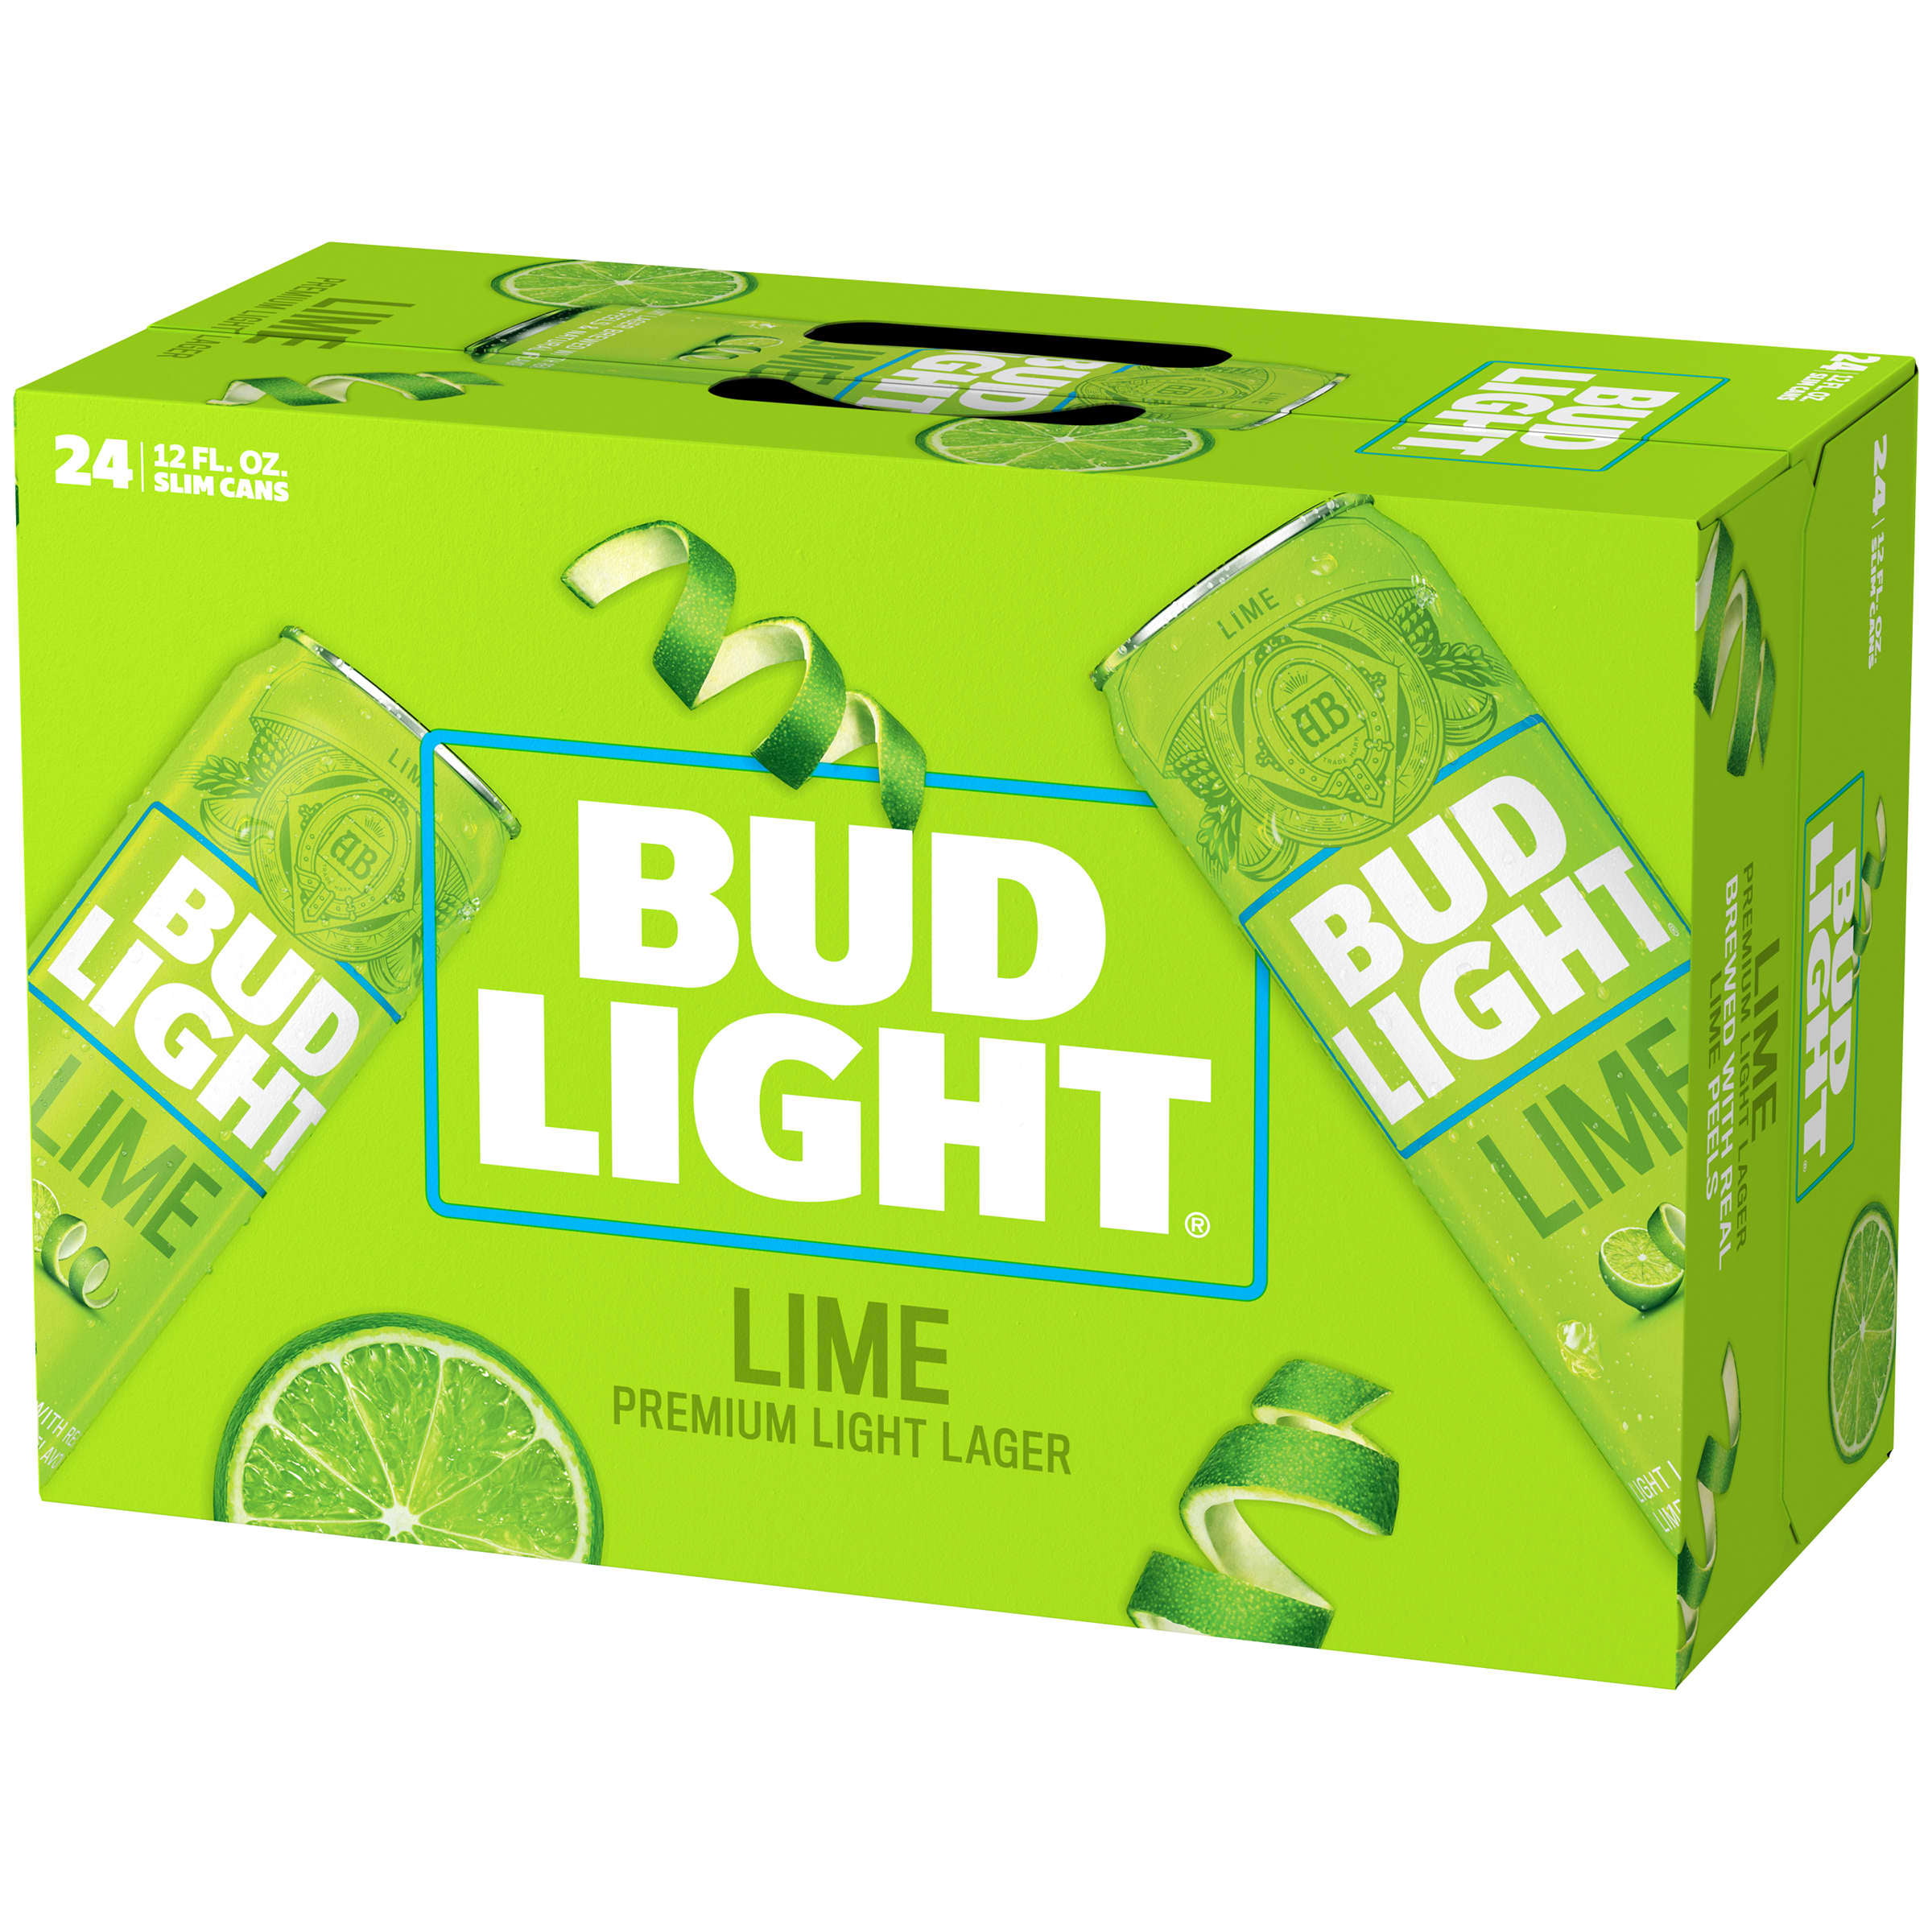 Bud Light Lime Beer, 24 Pack Beer, 12 FL OZ Cans